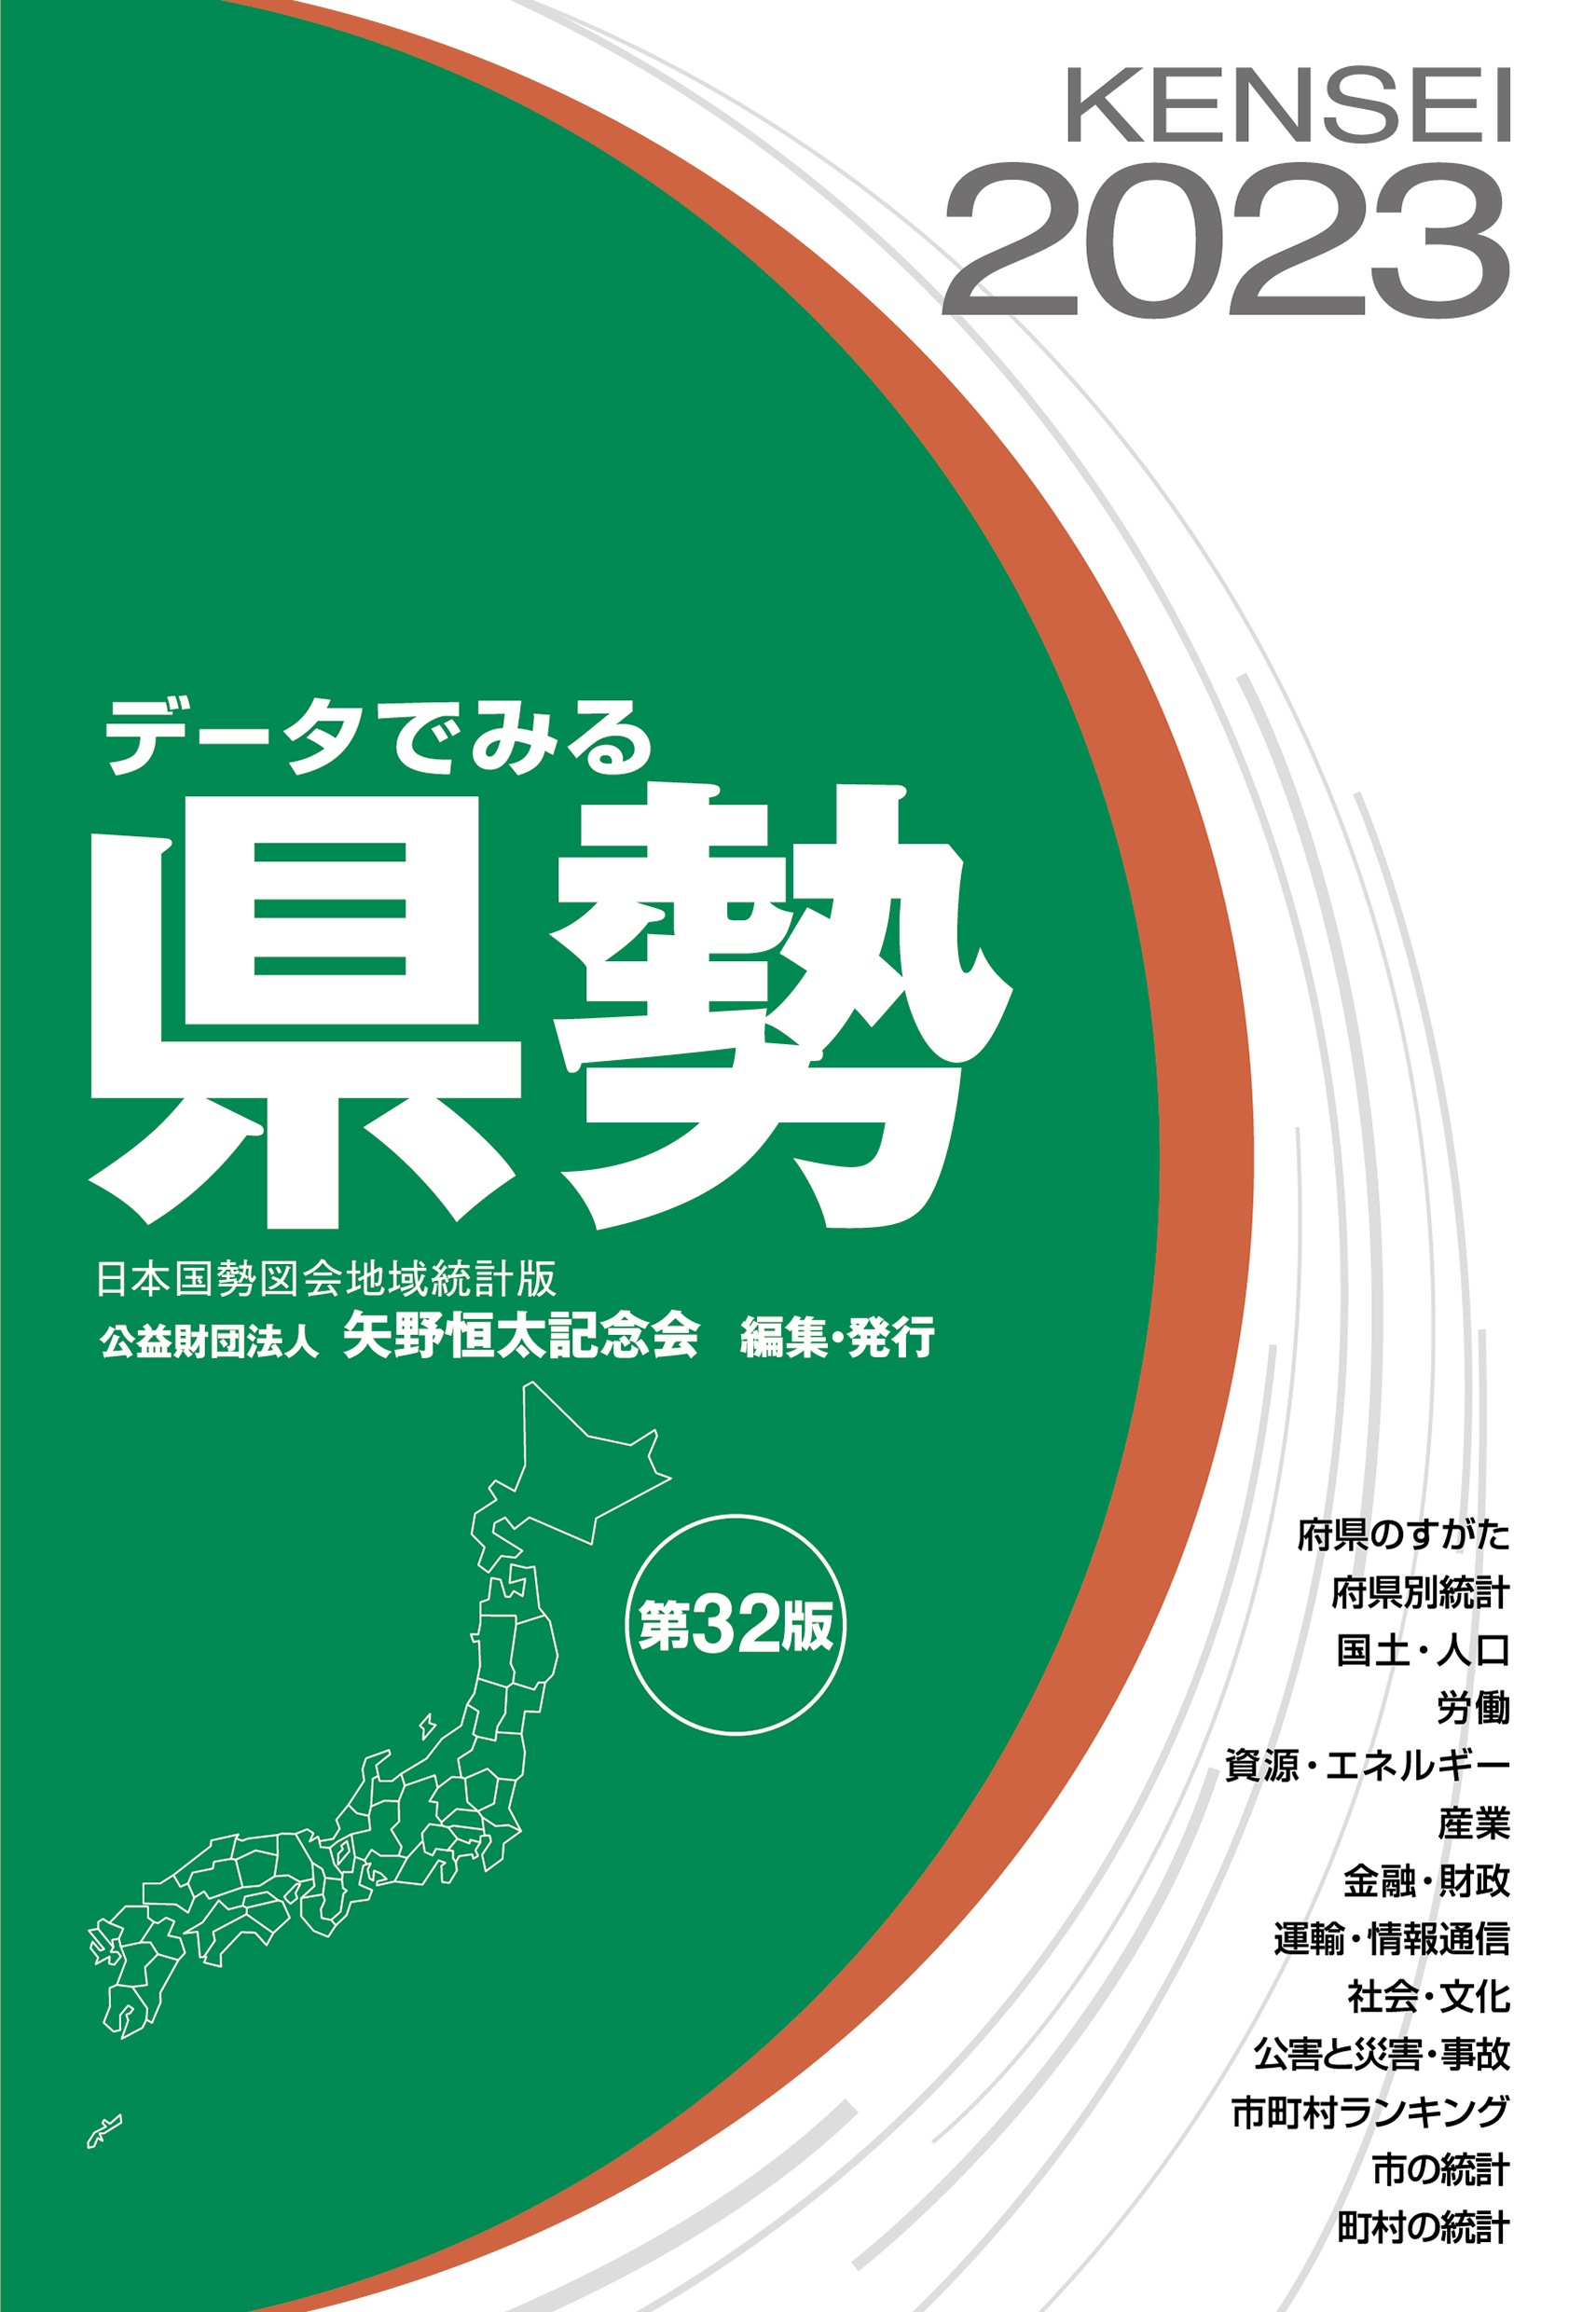 データでみる県勢2023 | 公益財団法人 矢野恒太記念会